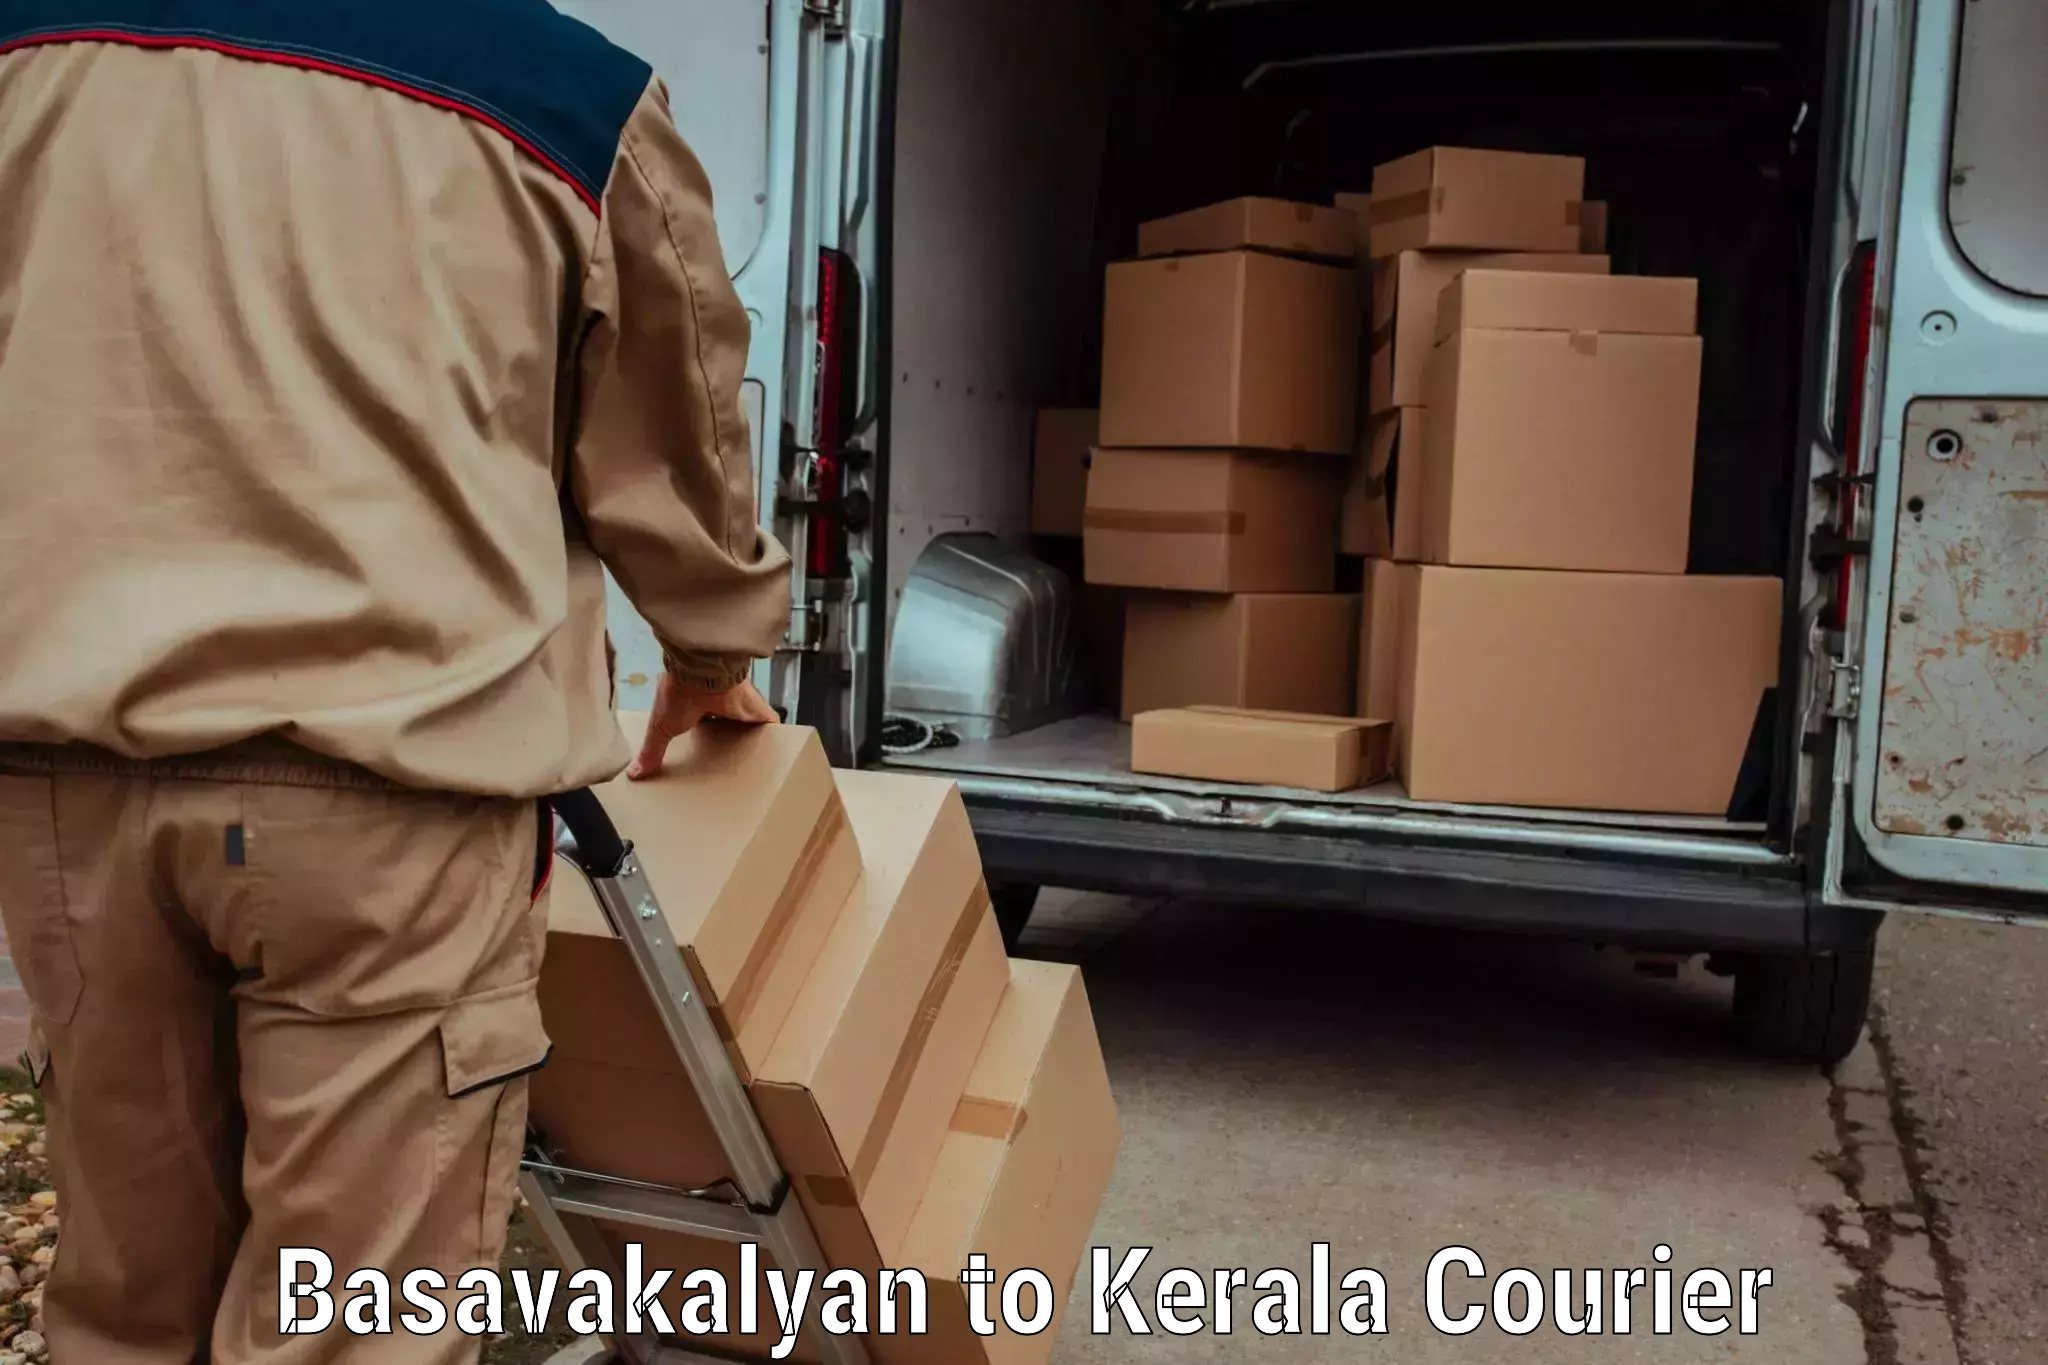 User-friendly courier app in Basavakalyan to Kerala